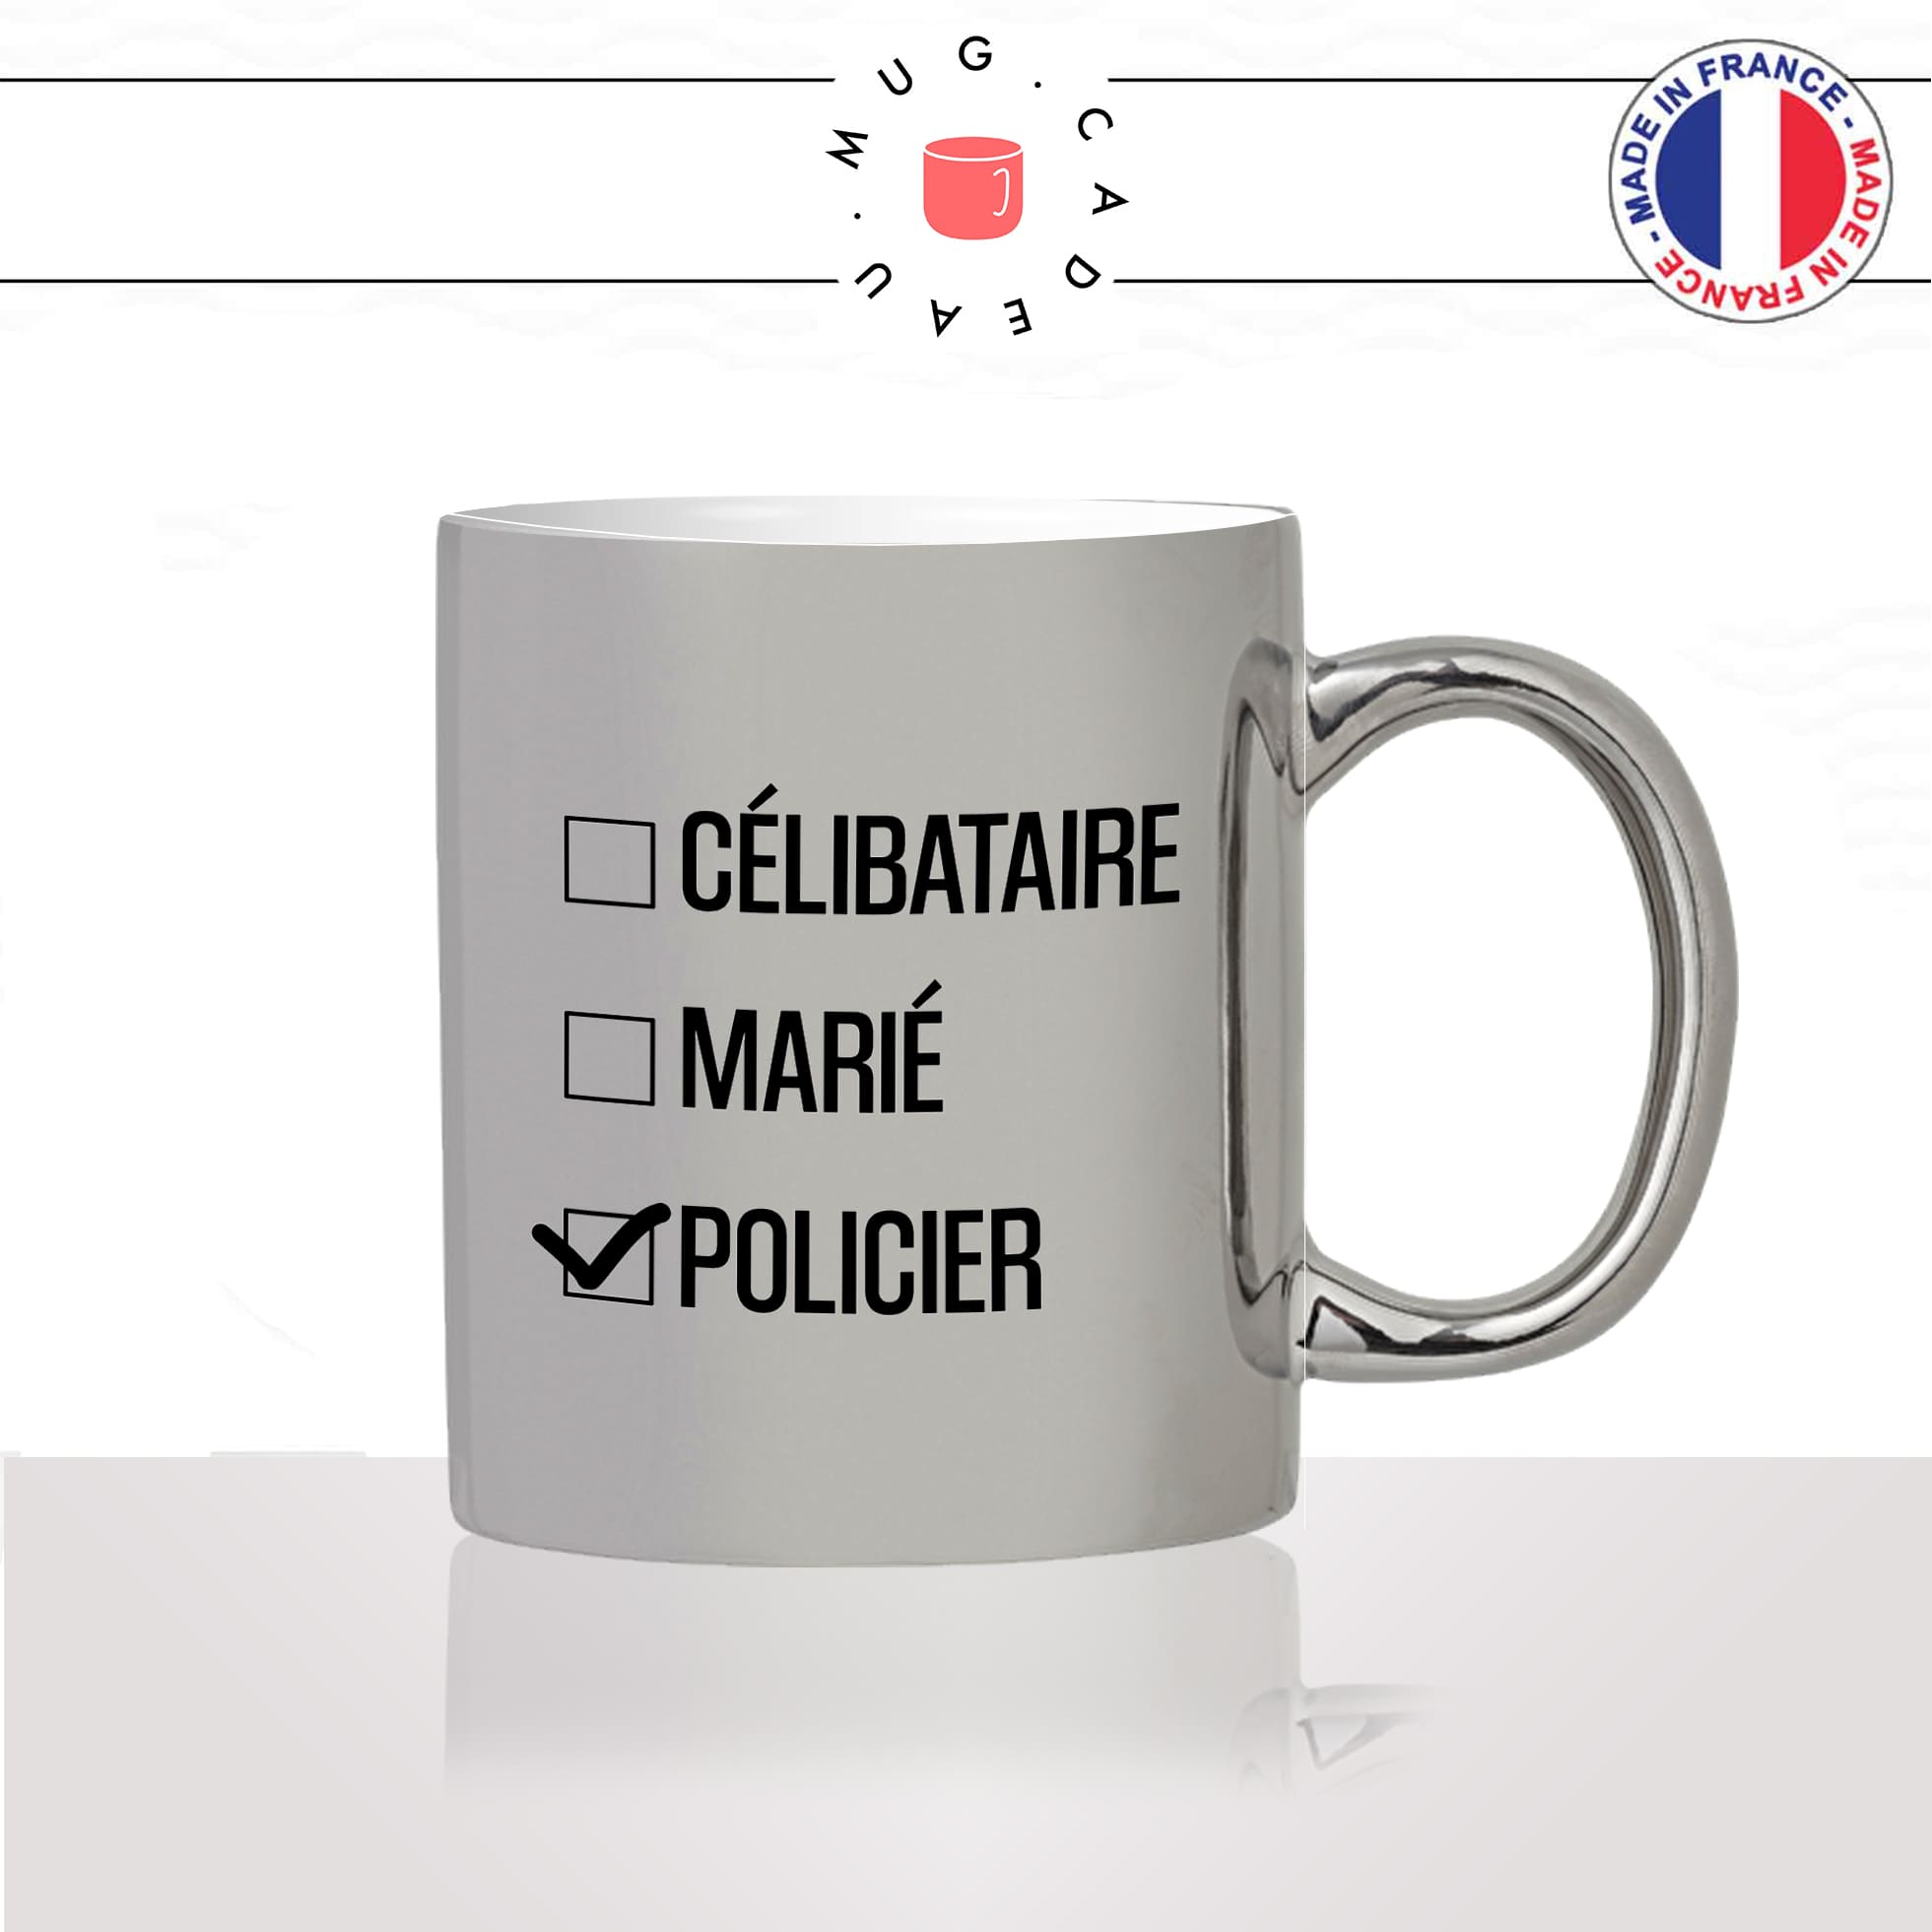 mug-tasse-argenté-silver-celibataire-marié-policier-fonctionnaire-de-police-travail-métier-fun-cool-café-thé-idée-cadeau-original2